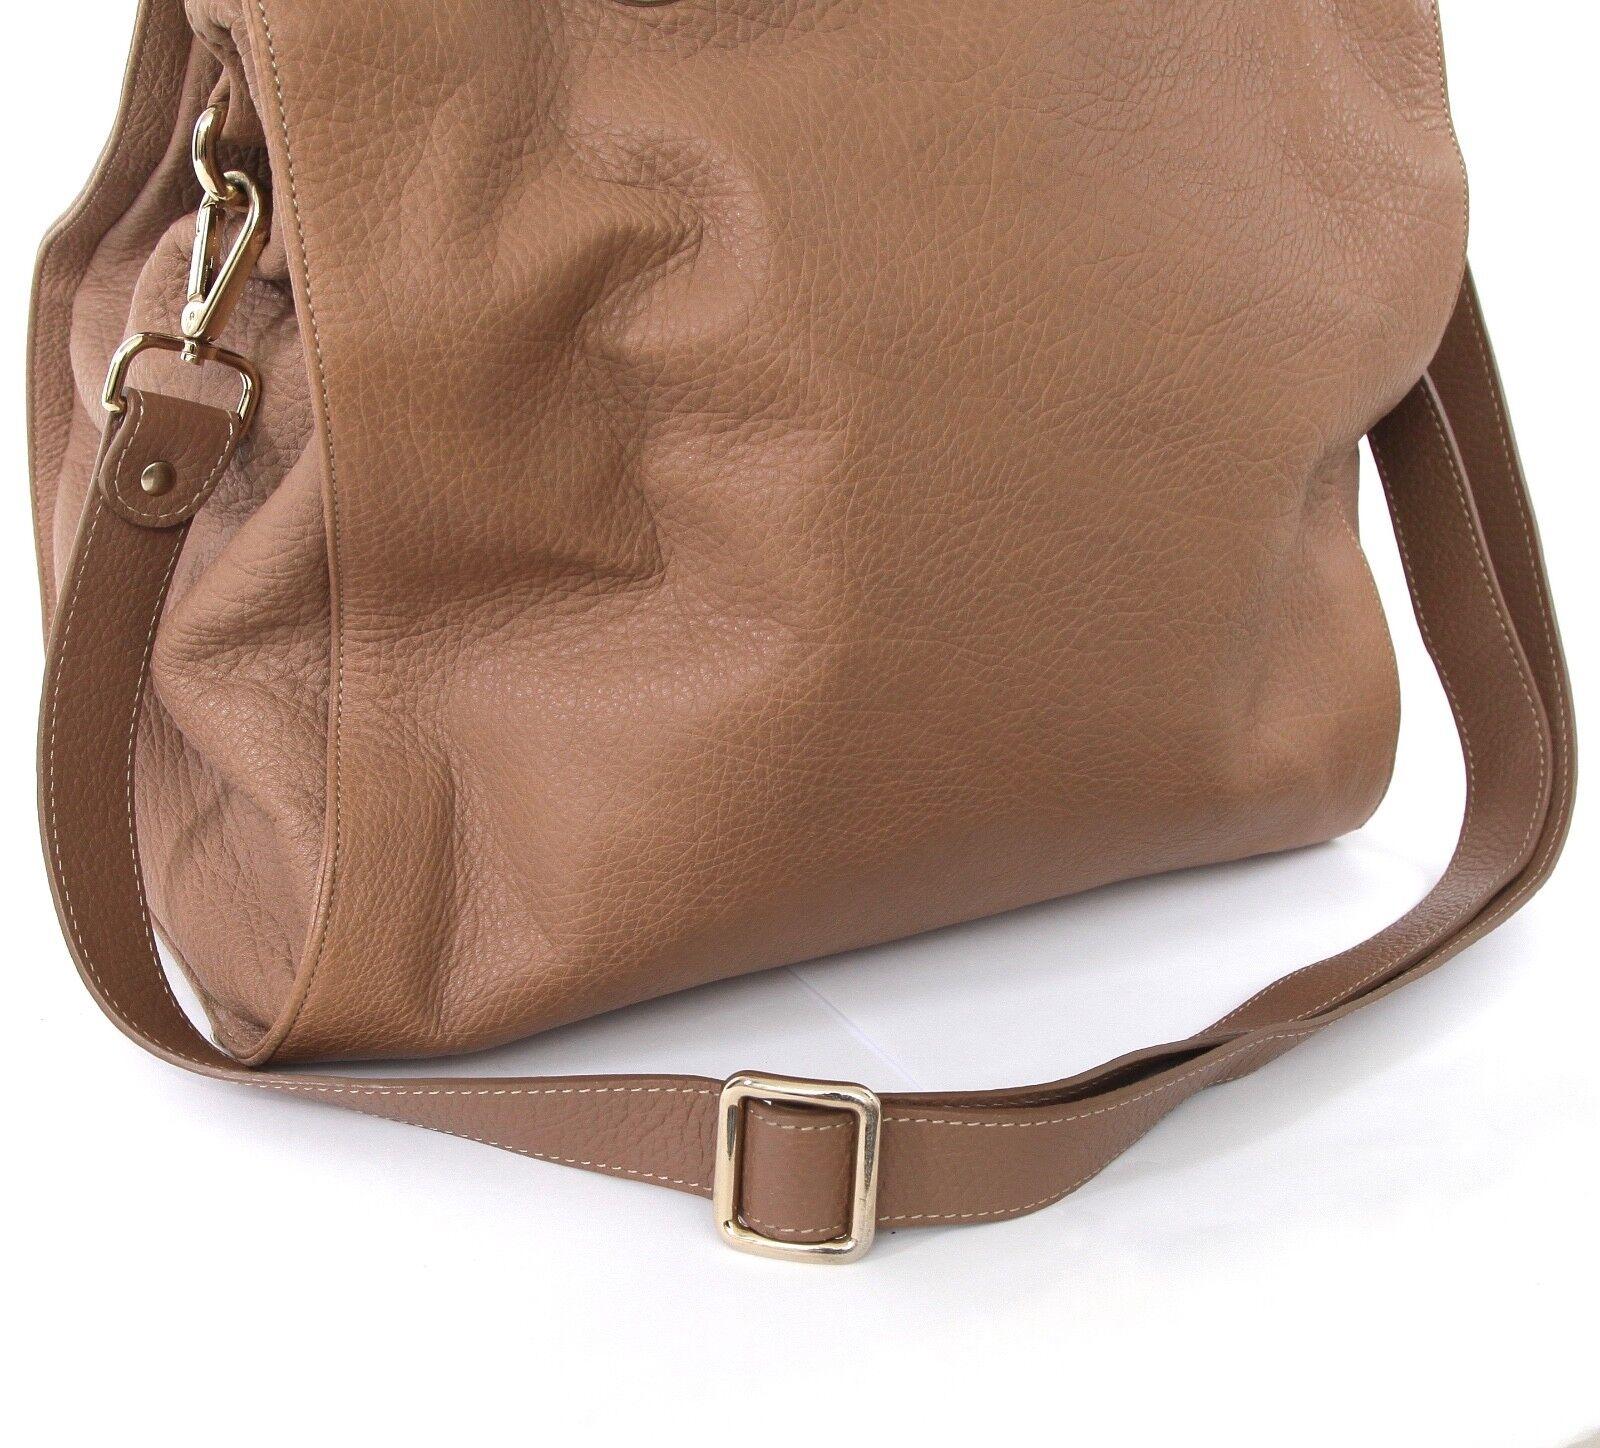 Marron JIMMY CHOO Bag Tan Leather Large ROSABEL Satchel Tote Shoulder Strap Gold HW en vente